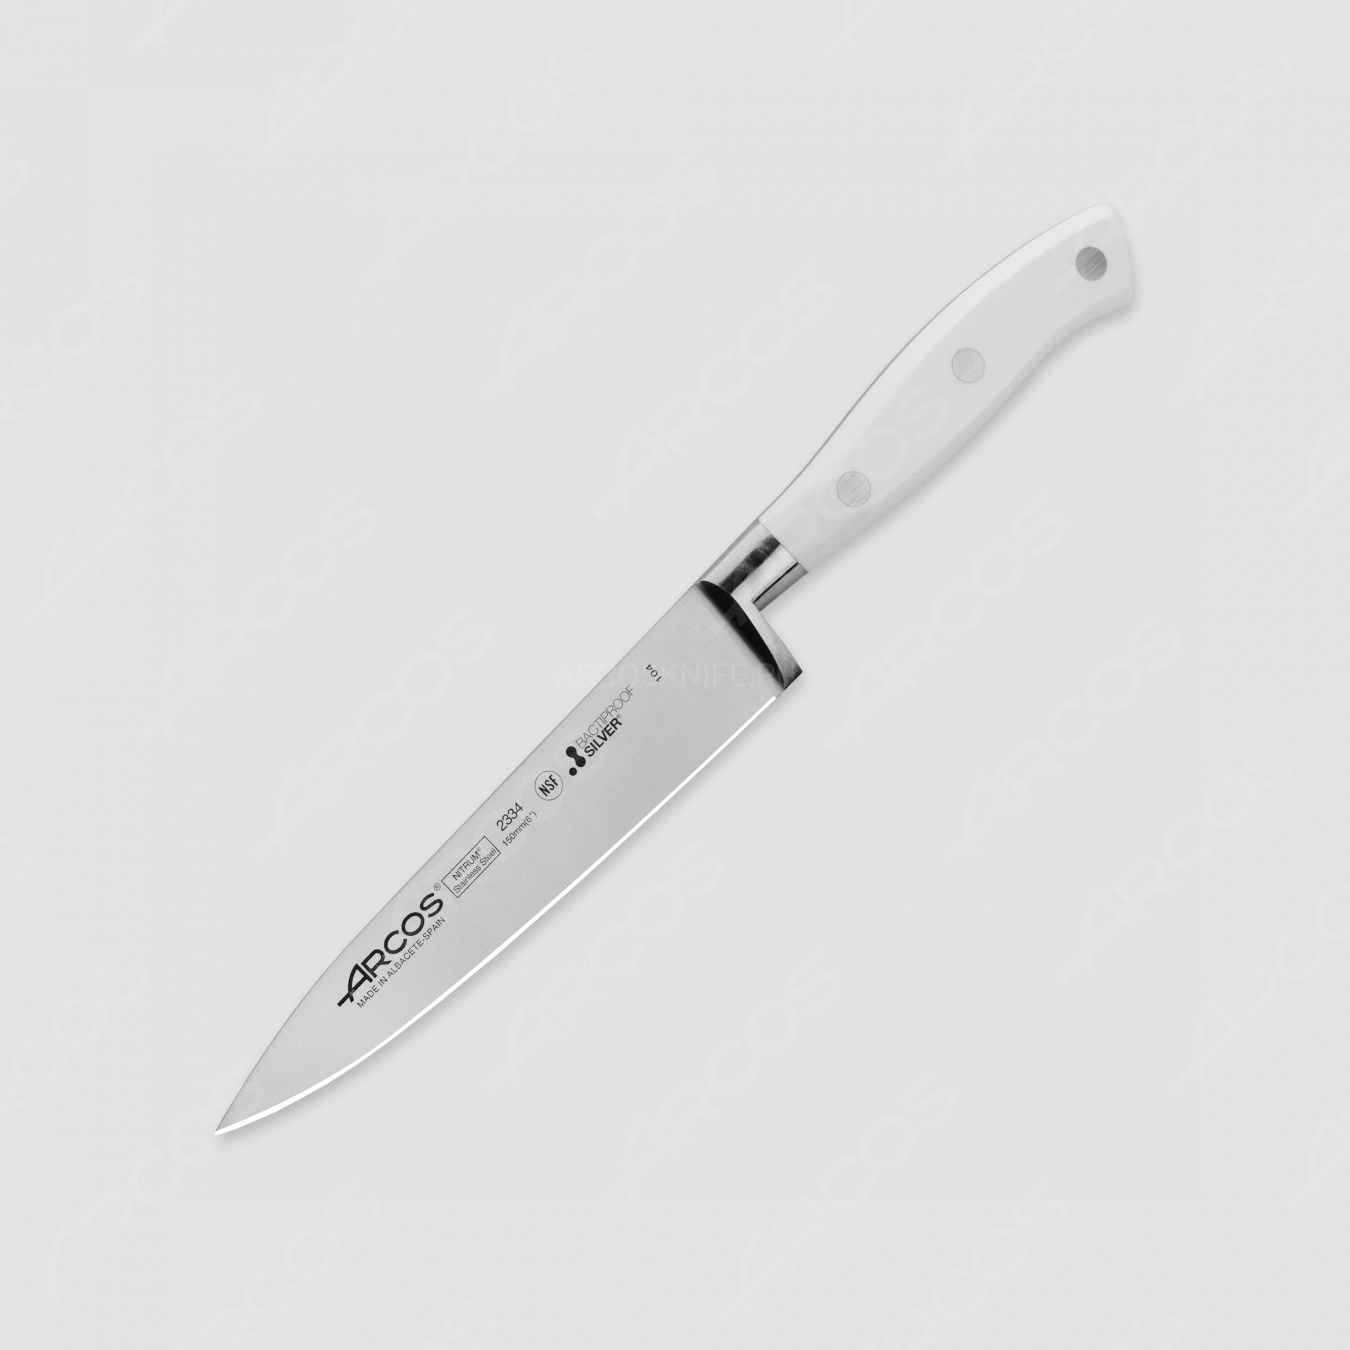 Профессиональный поварской кухонный нож 15 см, серия Riviera Blanca, ARCOS, Испания